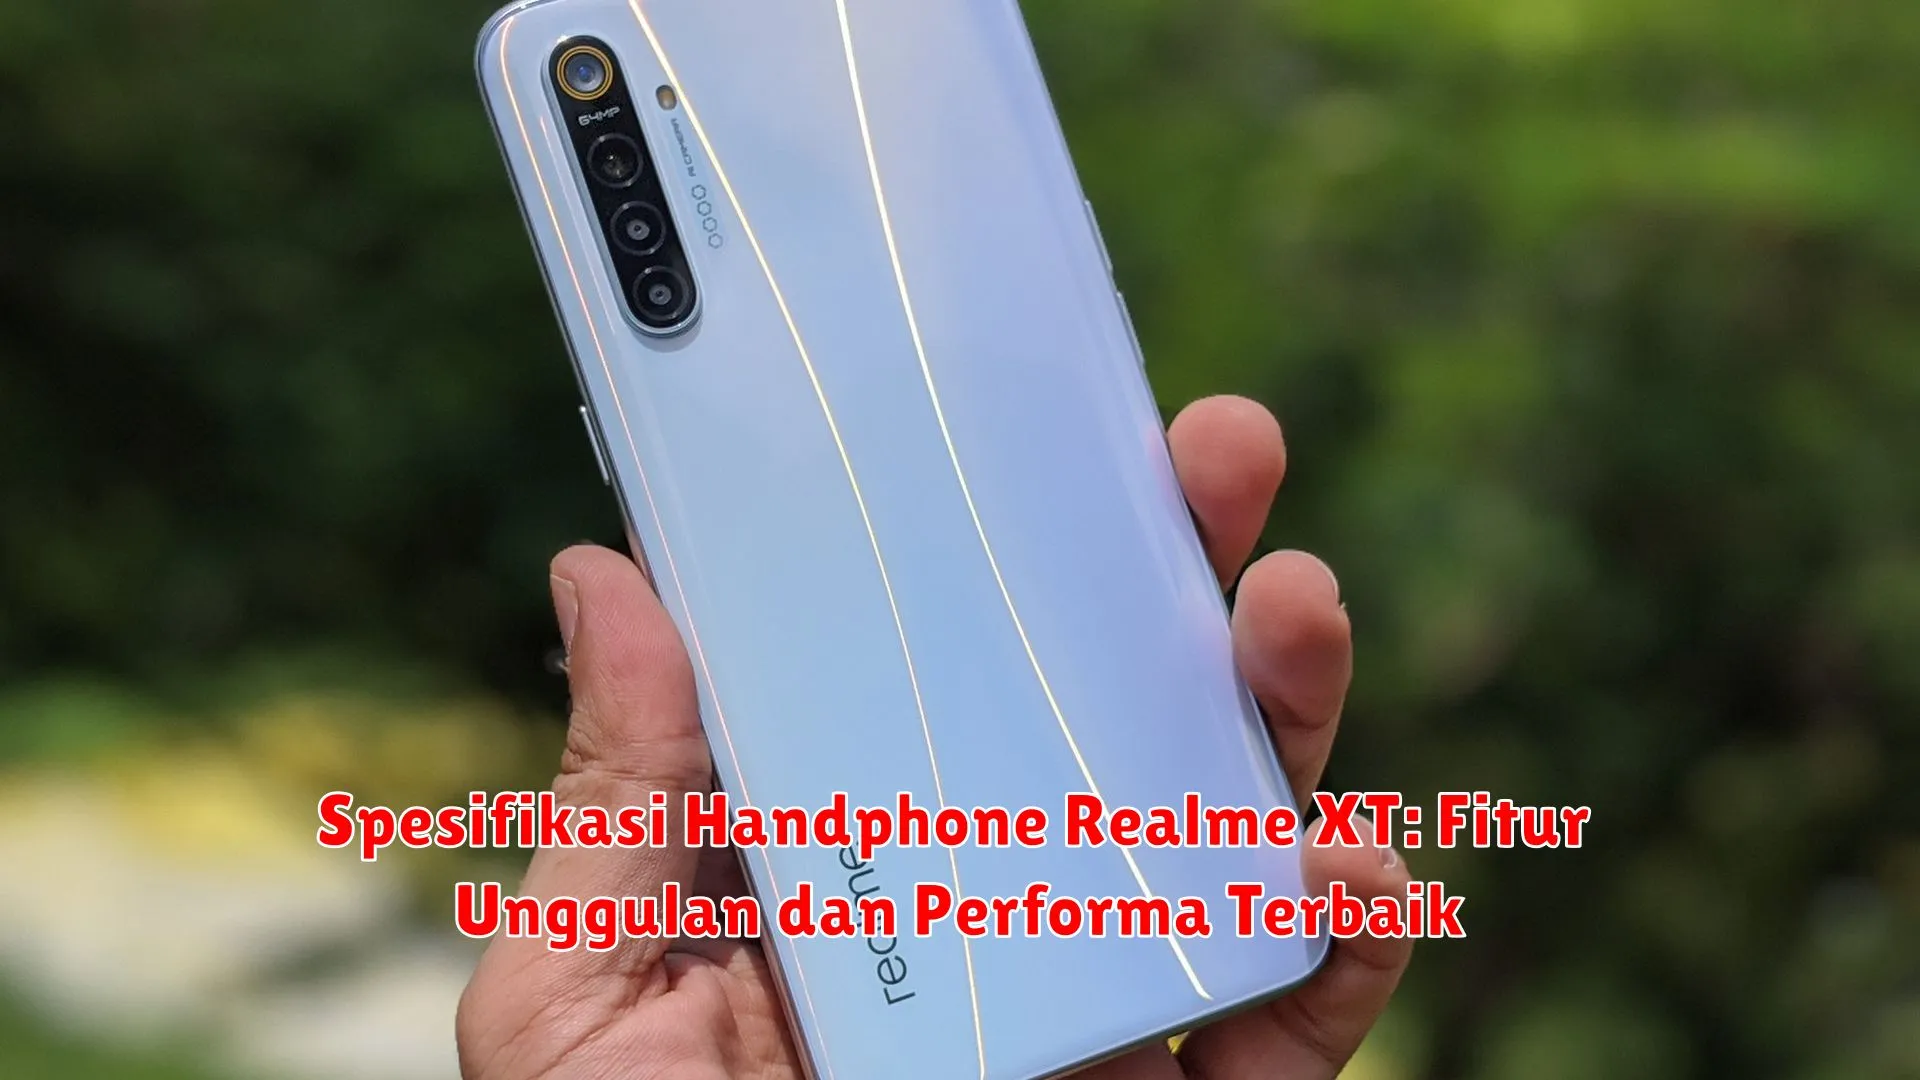 Spesifikasi Handphone Realme XT: Fitur Unggulan dan Performa Terbaik